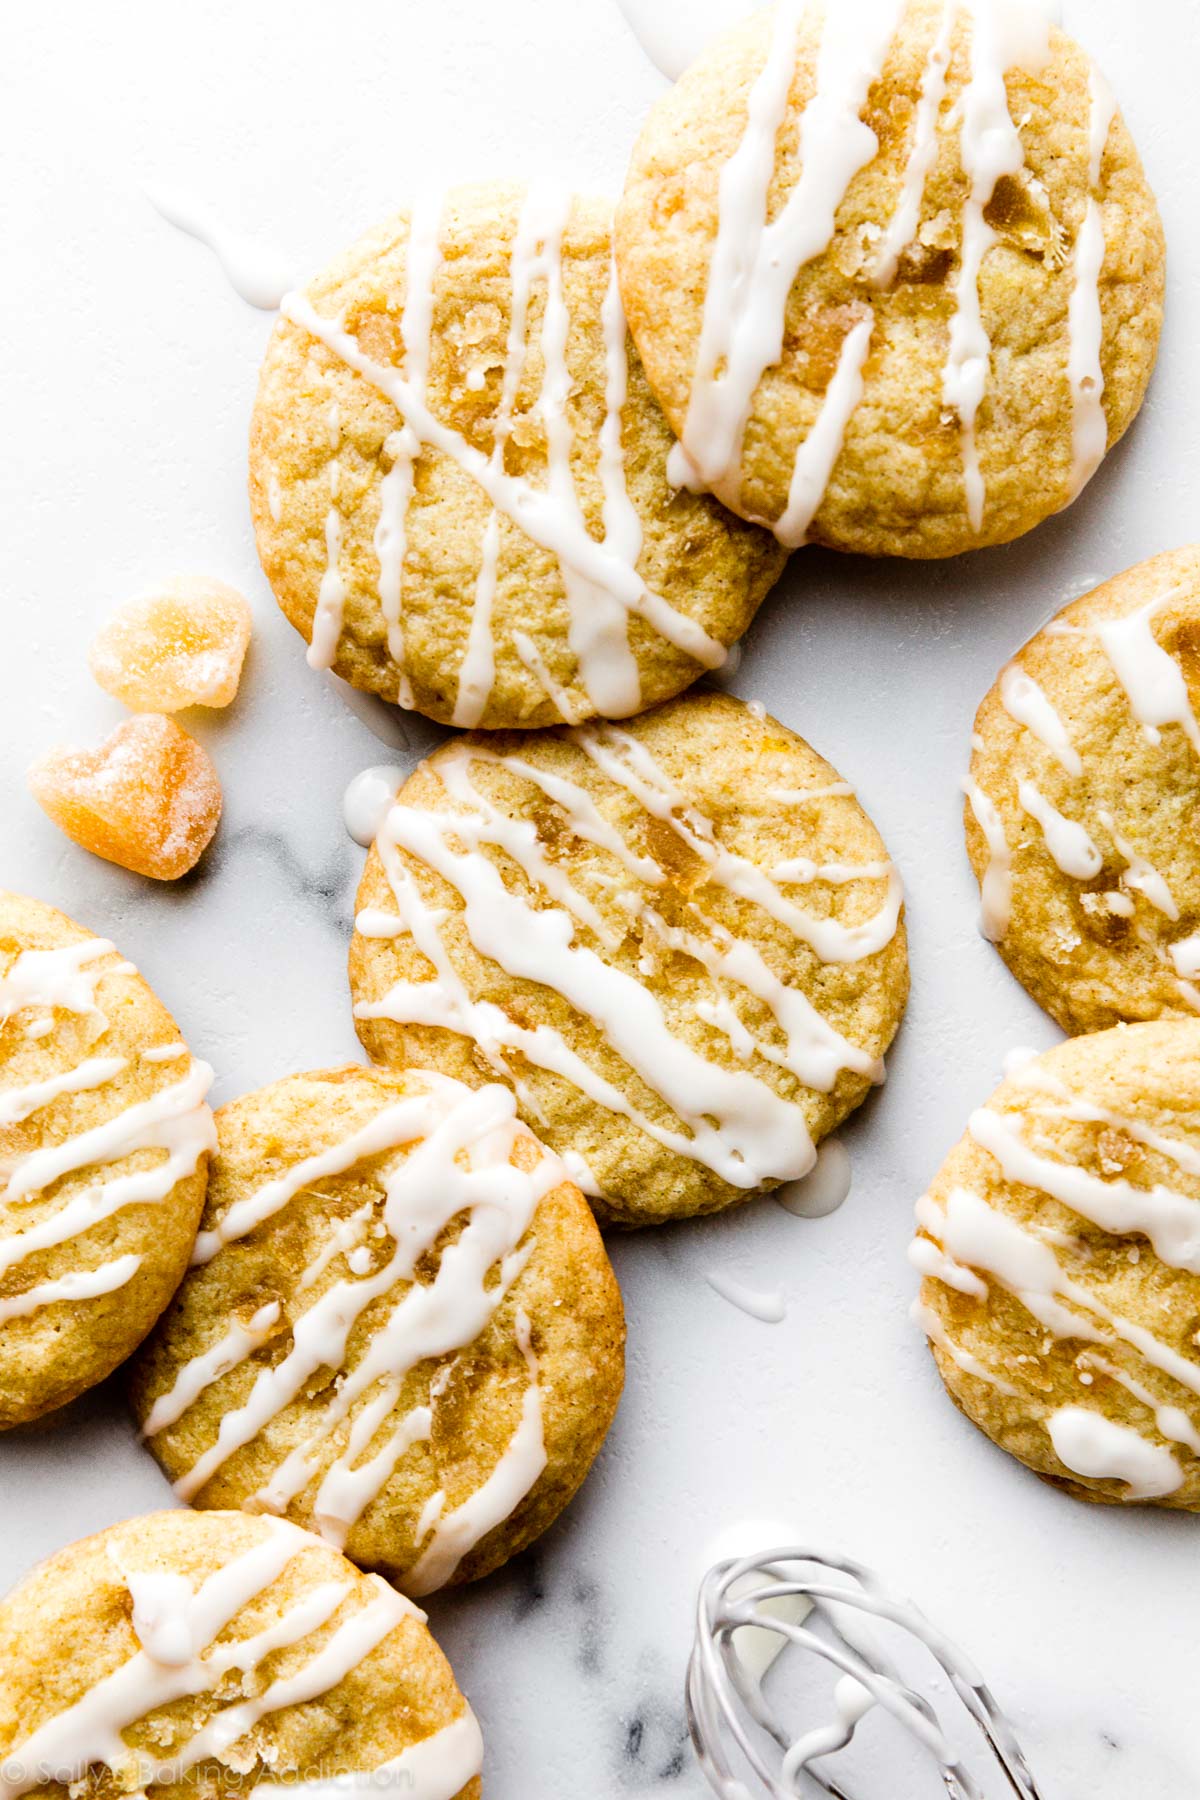 biscuits au citron avec gingembre confit et glaçage au citron sur le dessus